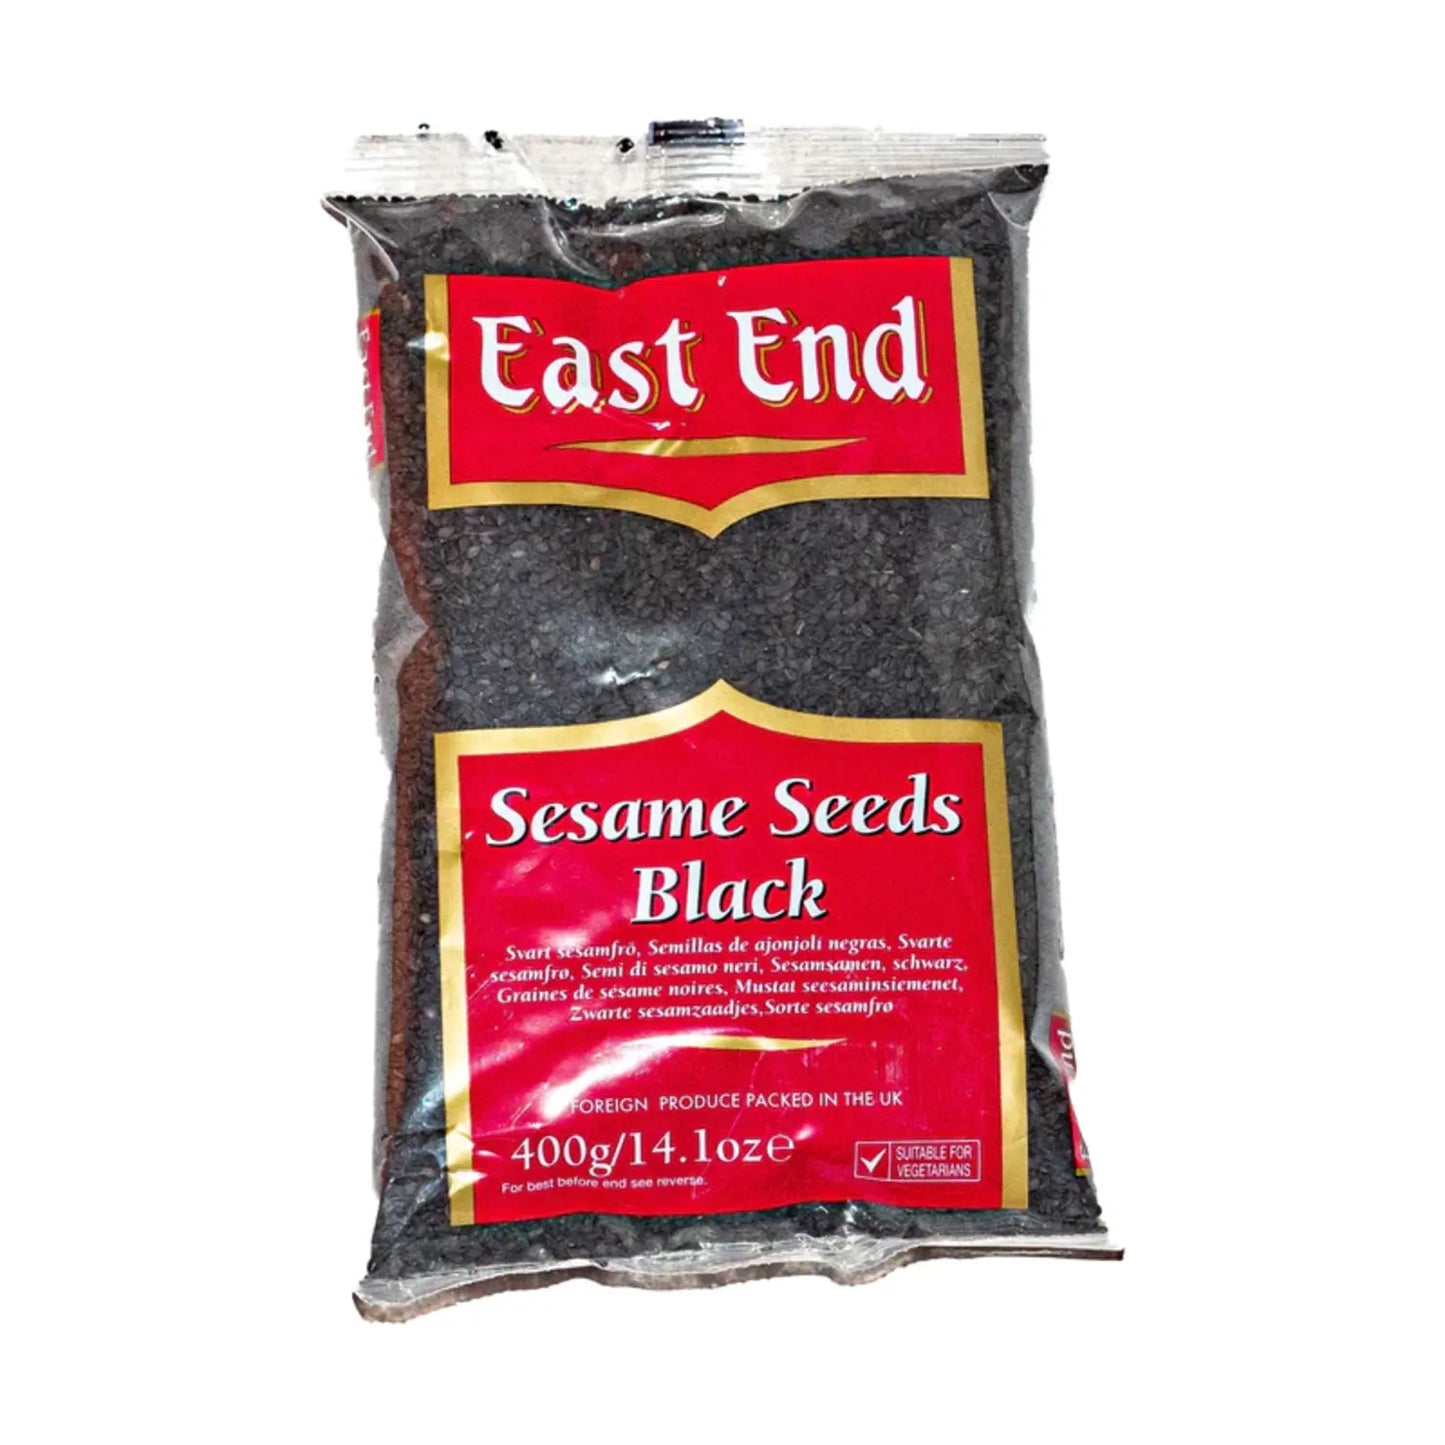 East End Sesame Seeds Black 400g